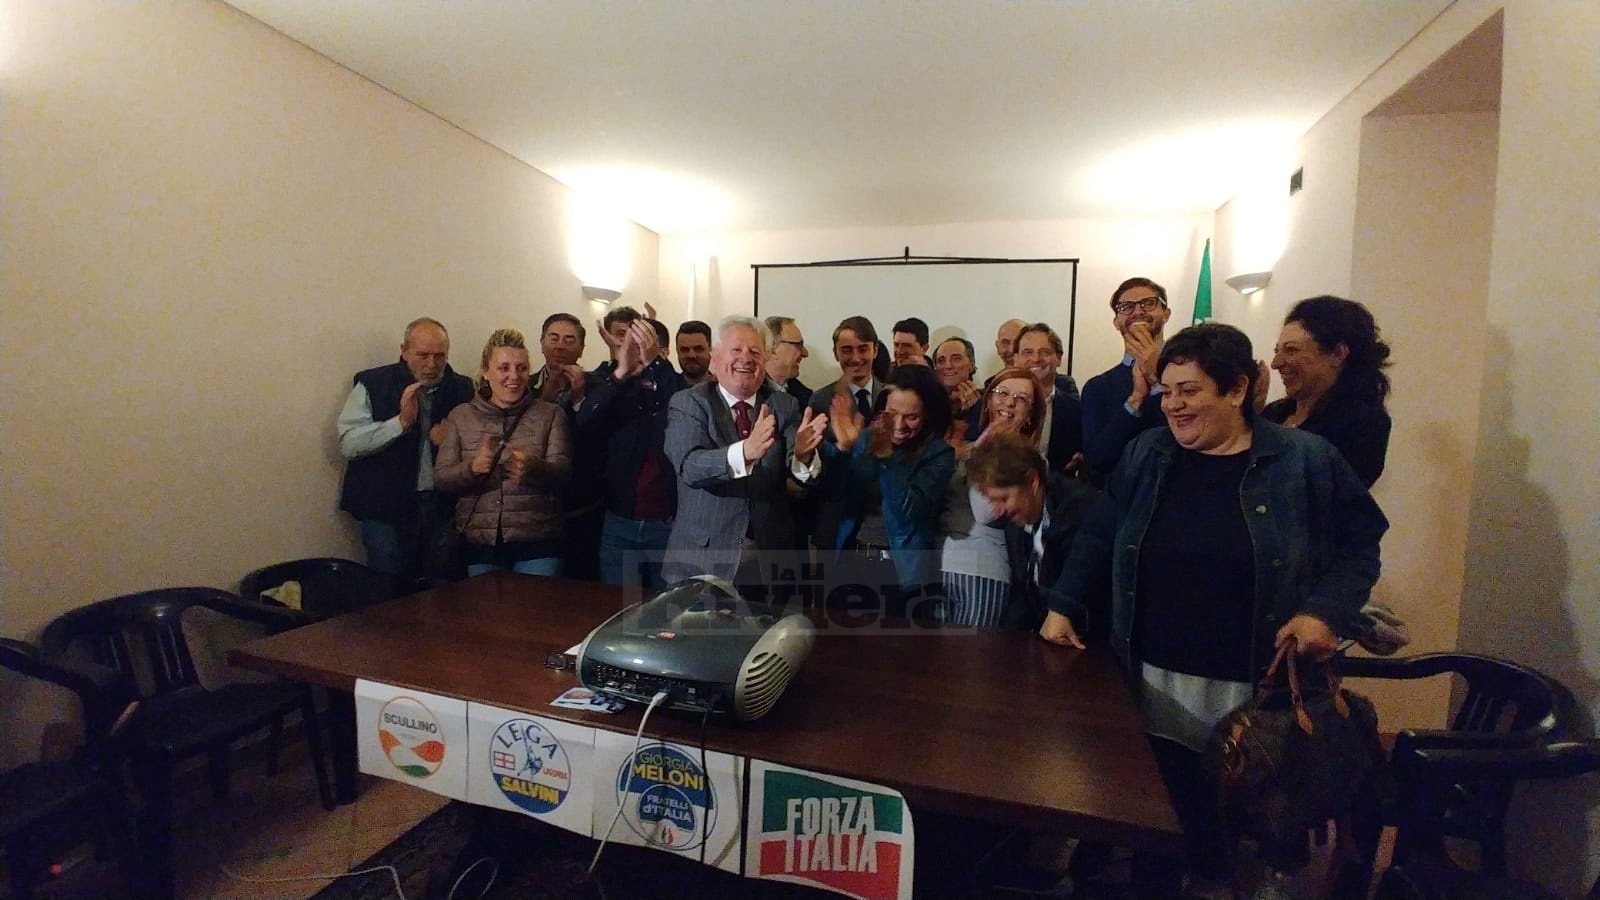 Comunali 2019 Ventimiglia Gaetano Scullino sindsco festeggiamenti_02